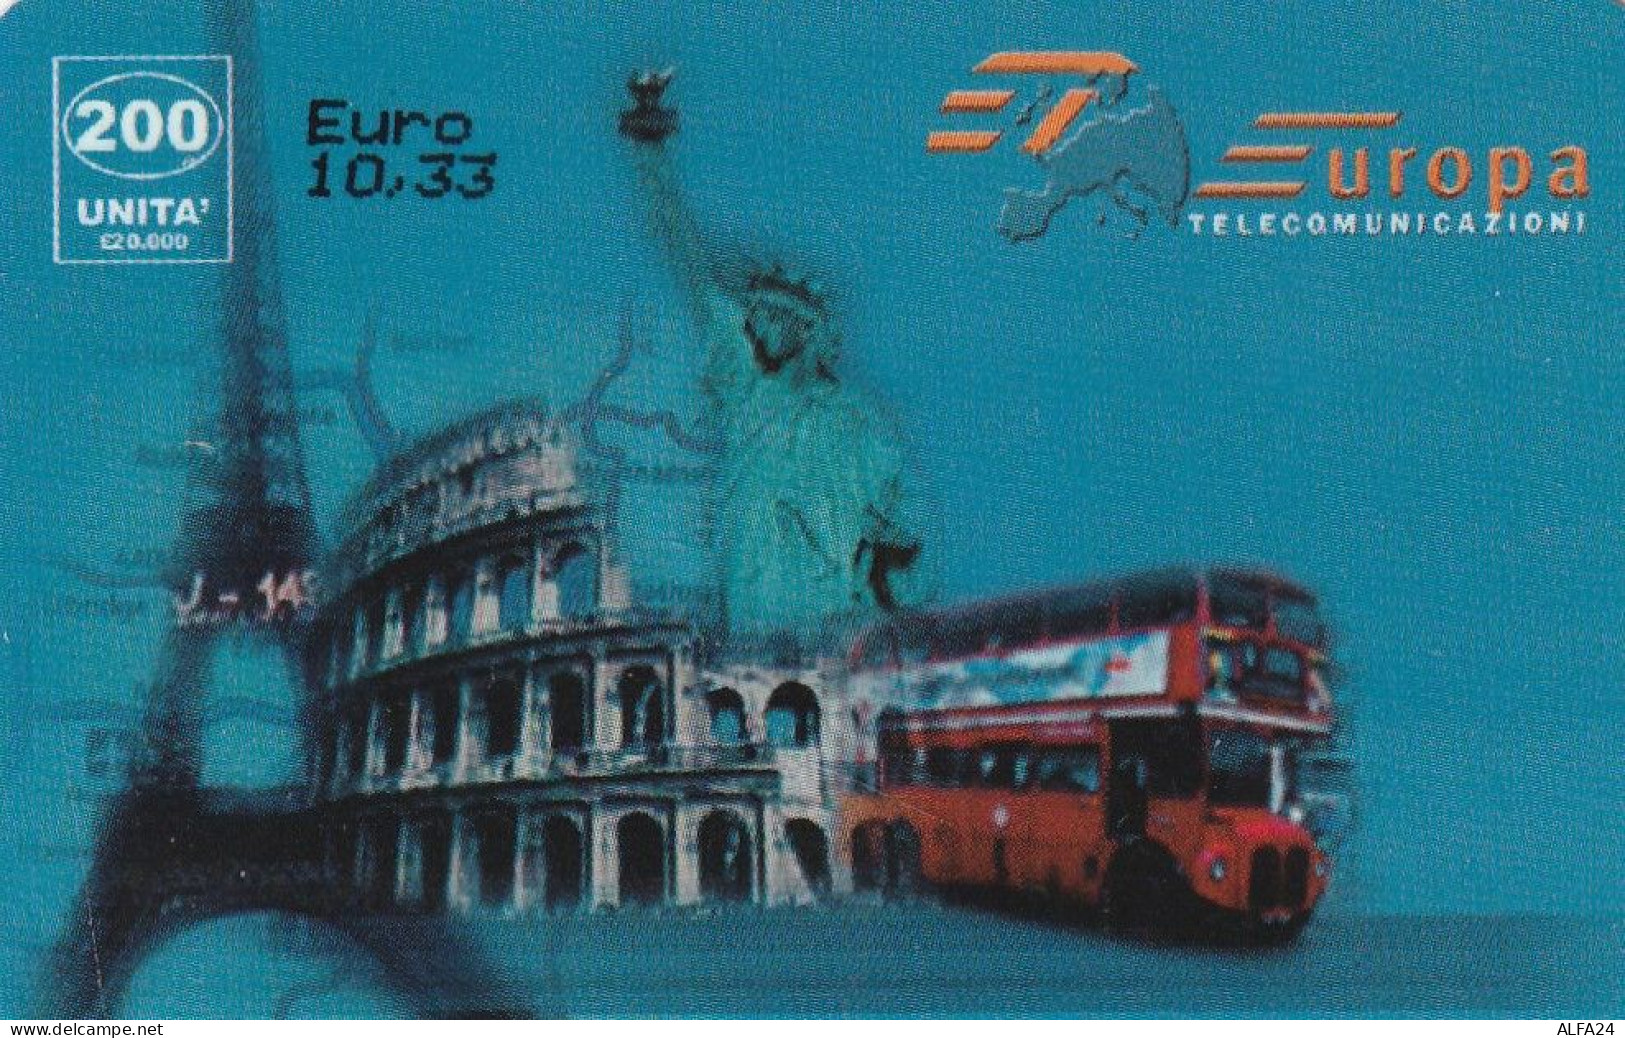 PREPAID PHONE CARD ITALIA  (CZ2007 - Publiques Ordinaires